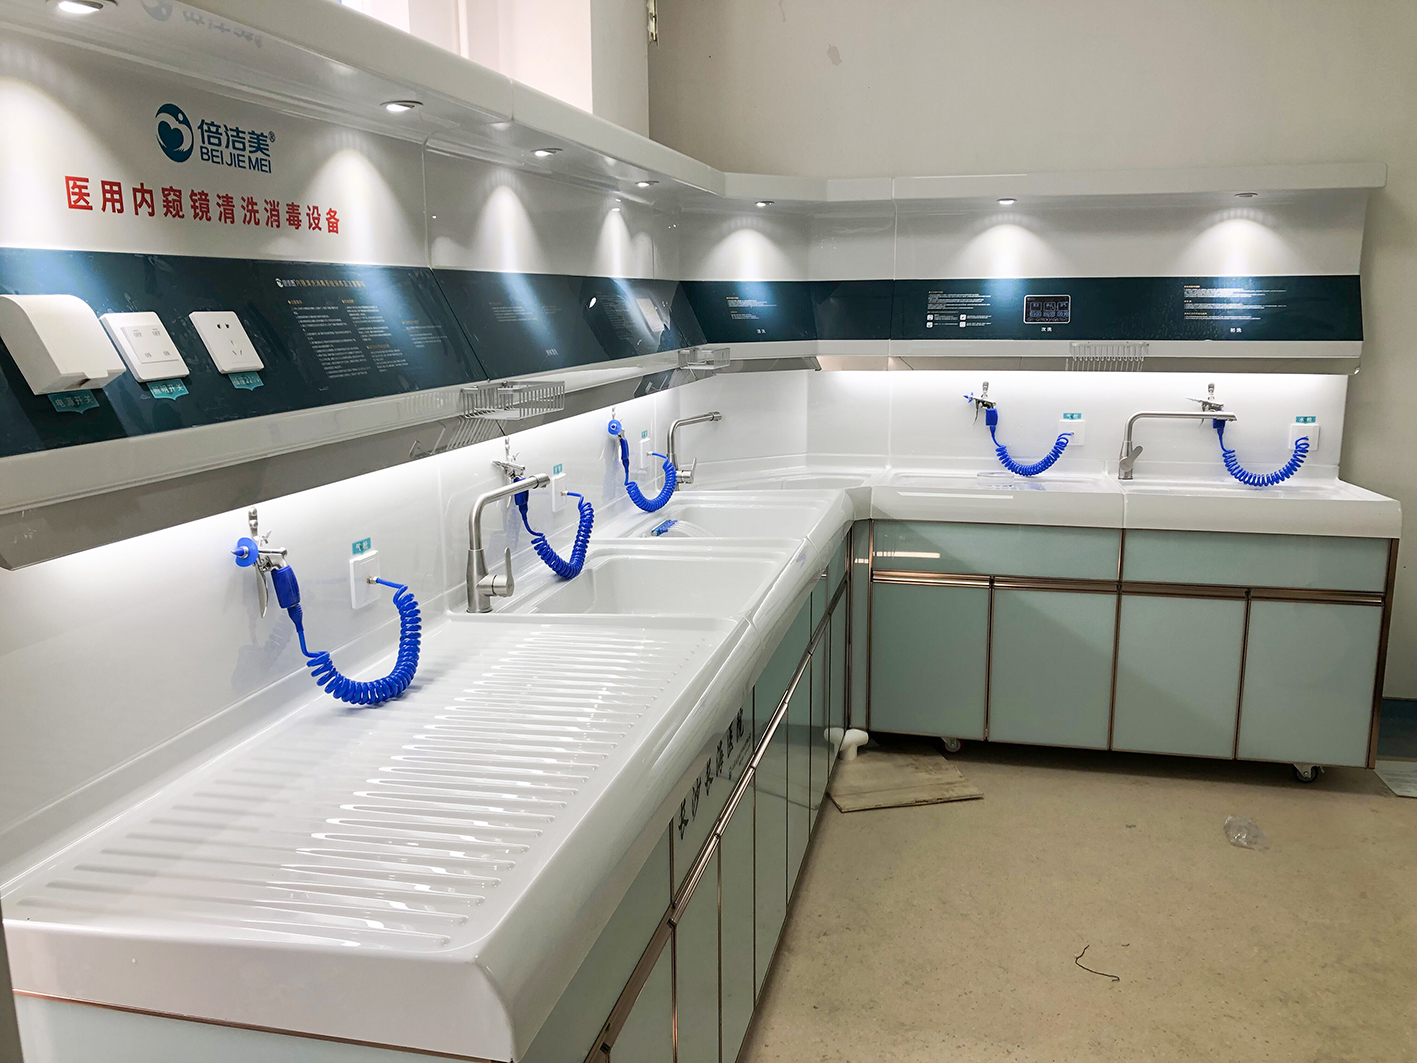 长沙长海医院内镜清洗工作站安装与调试完成